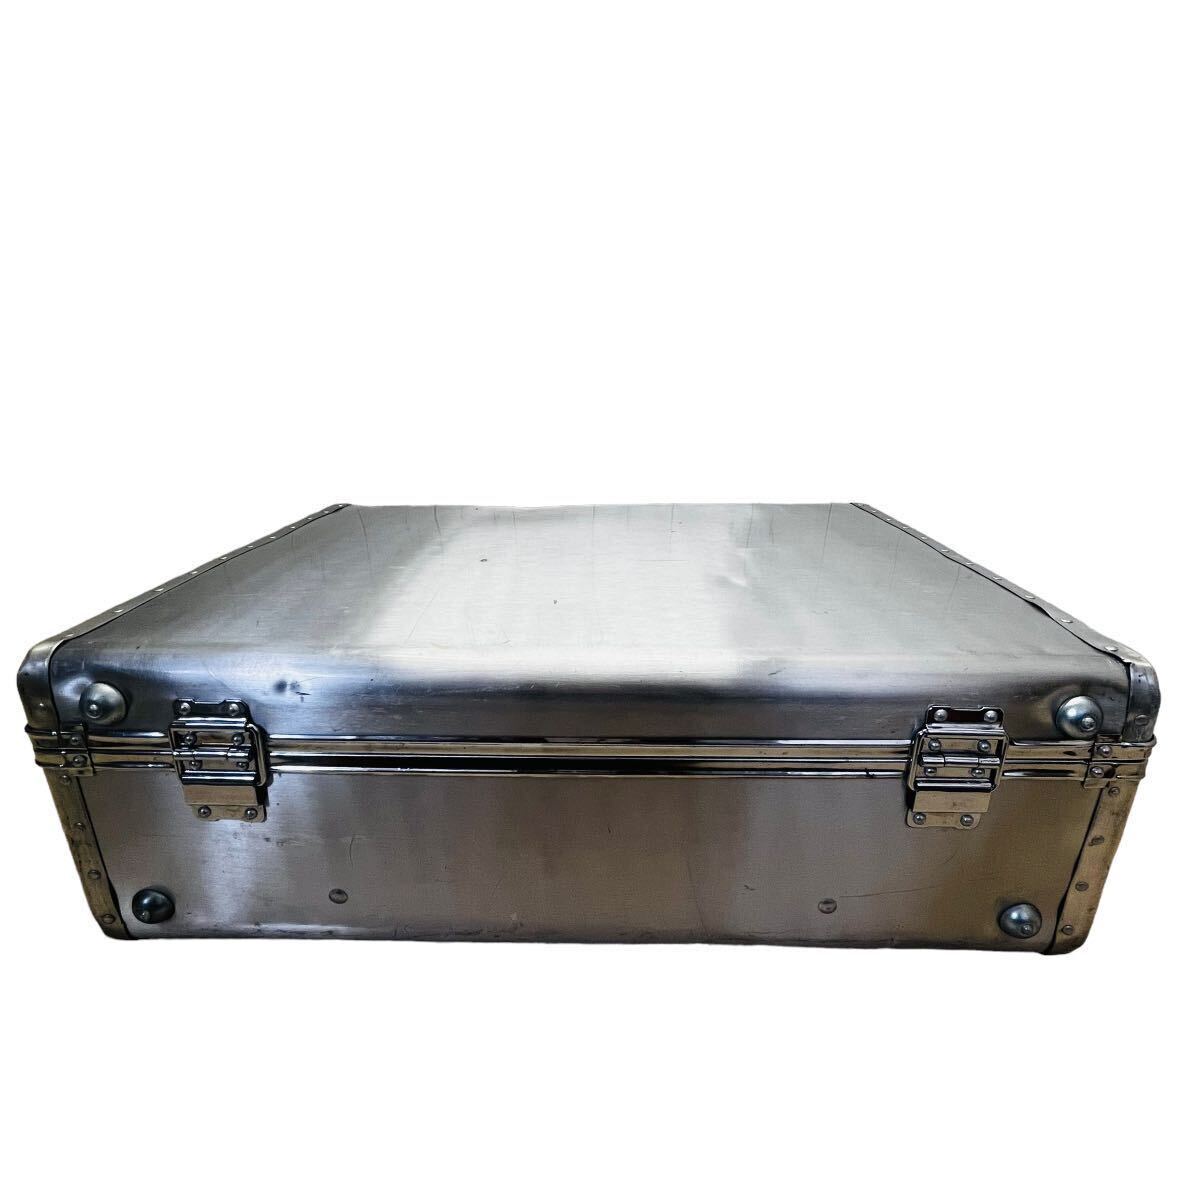 J04007 attache case aluminium suitcase hard case Vintage antique aluminium case business 